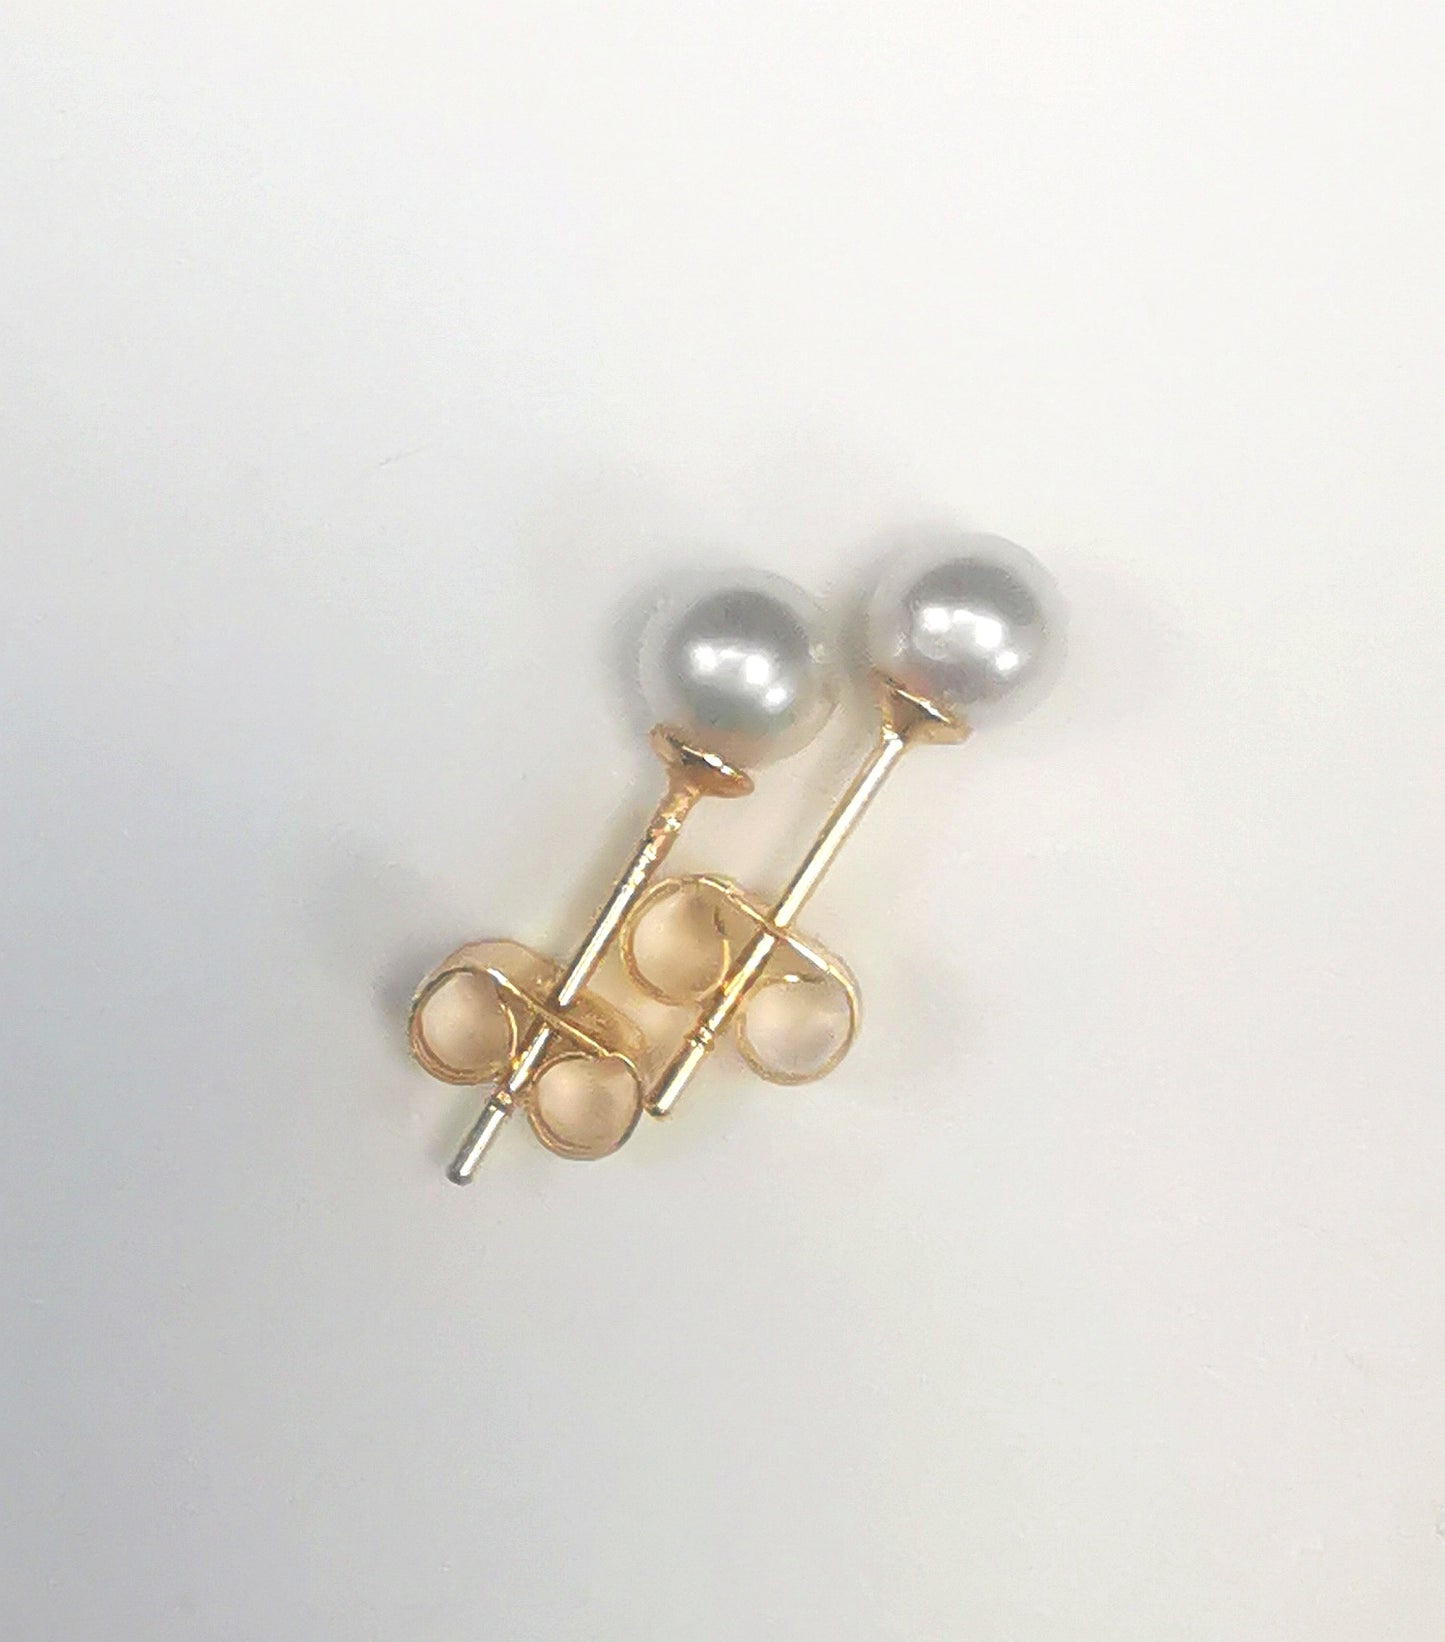 Boucles d'oreilles perles de culture blanches rondes 5mm montées sur clous plaqués or. Présentées cote à cote, perles en haut, les deux décalées vers la droite, sur fond blanc. Vue de dessus.